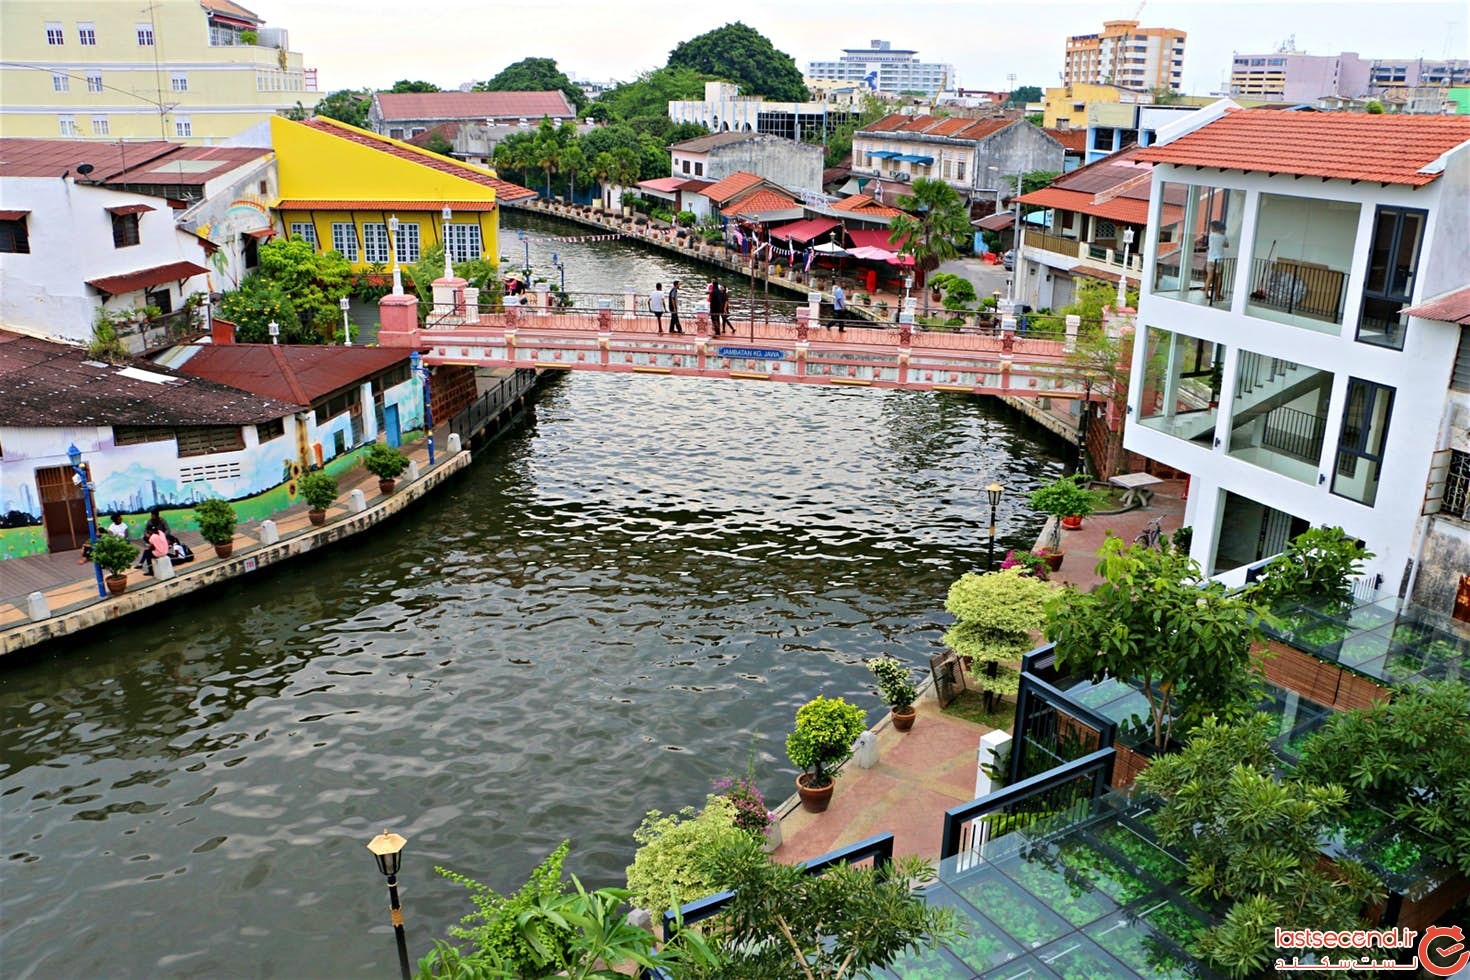  شهر ملاکا مالزی